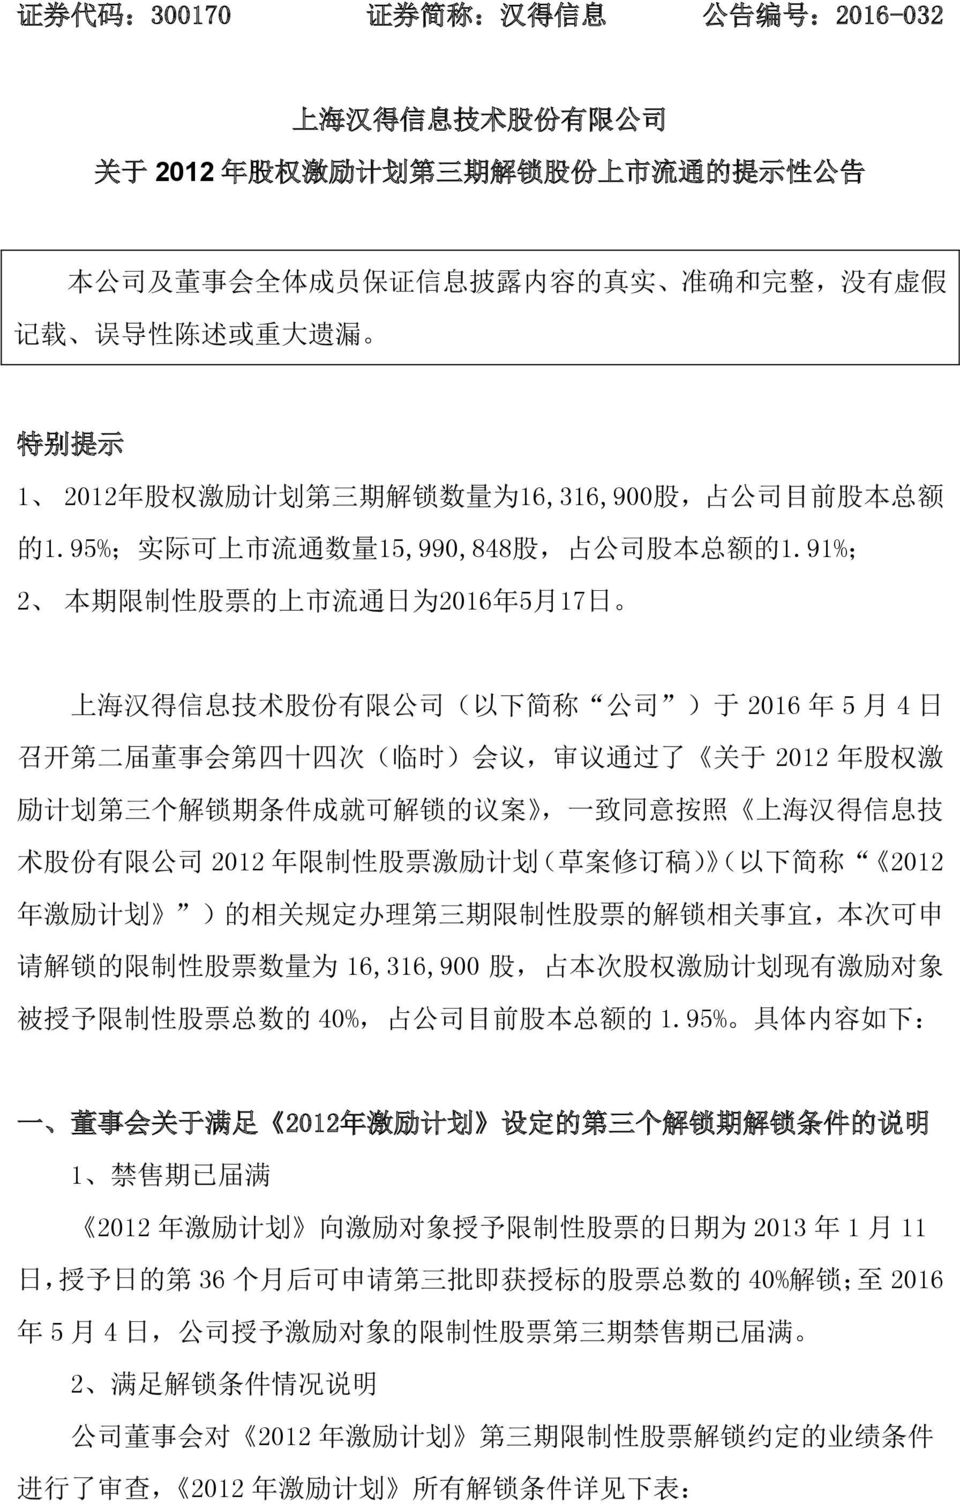 91%; 2 本 期 限 制 性 股 票 的 上 市 流 通 日 为 2016 年 5 月 17 日 上 海 汉 得 信 息 技 术 股 份 有 限 公 司 ( 以 下 简 称 公 司 ) 于 2016 年 5 月 4 日 召 开 第 二 届 董 事 会 第 四 十 四 次 ( 临 时 ) 会 议, 审 议 通 过 了 关 于 2012 年 股 权 激 励 计 划 第 三 个 解 锁 期 条 件